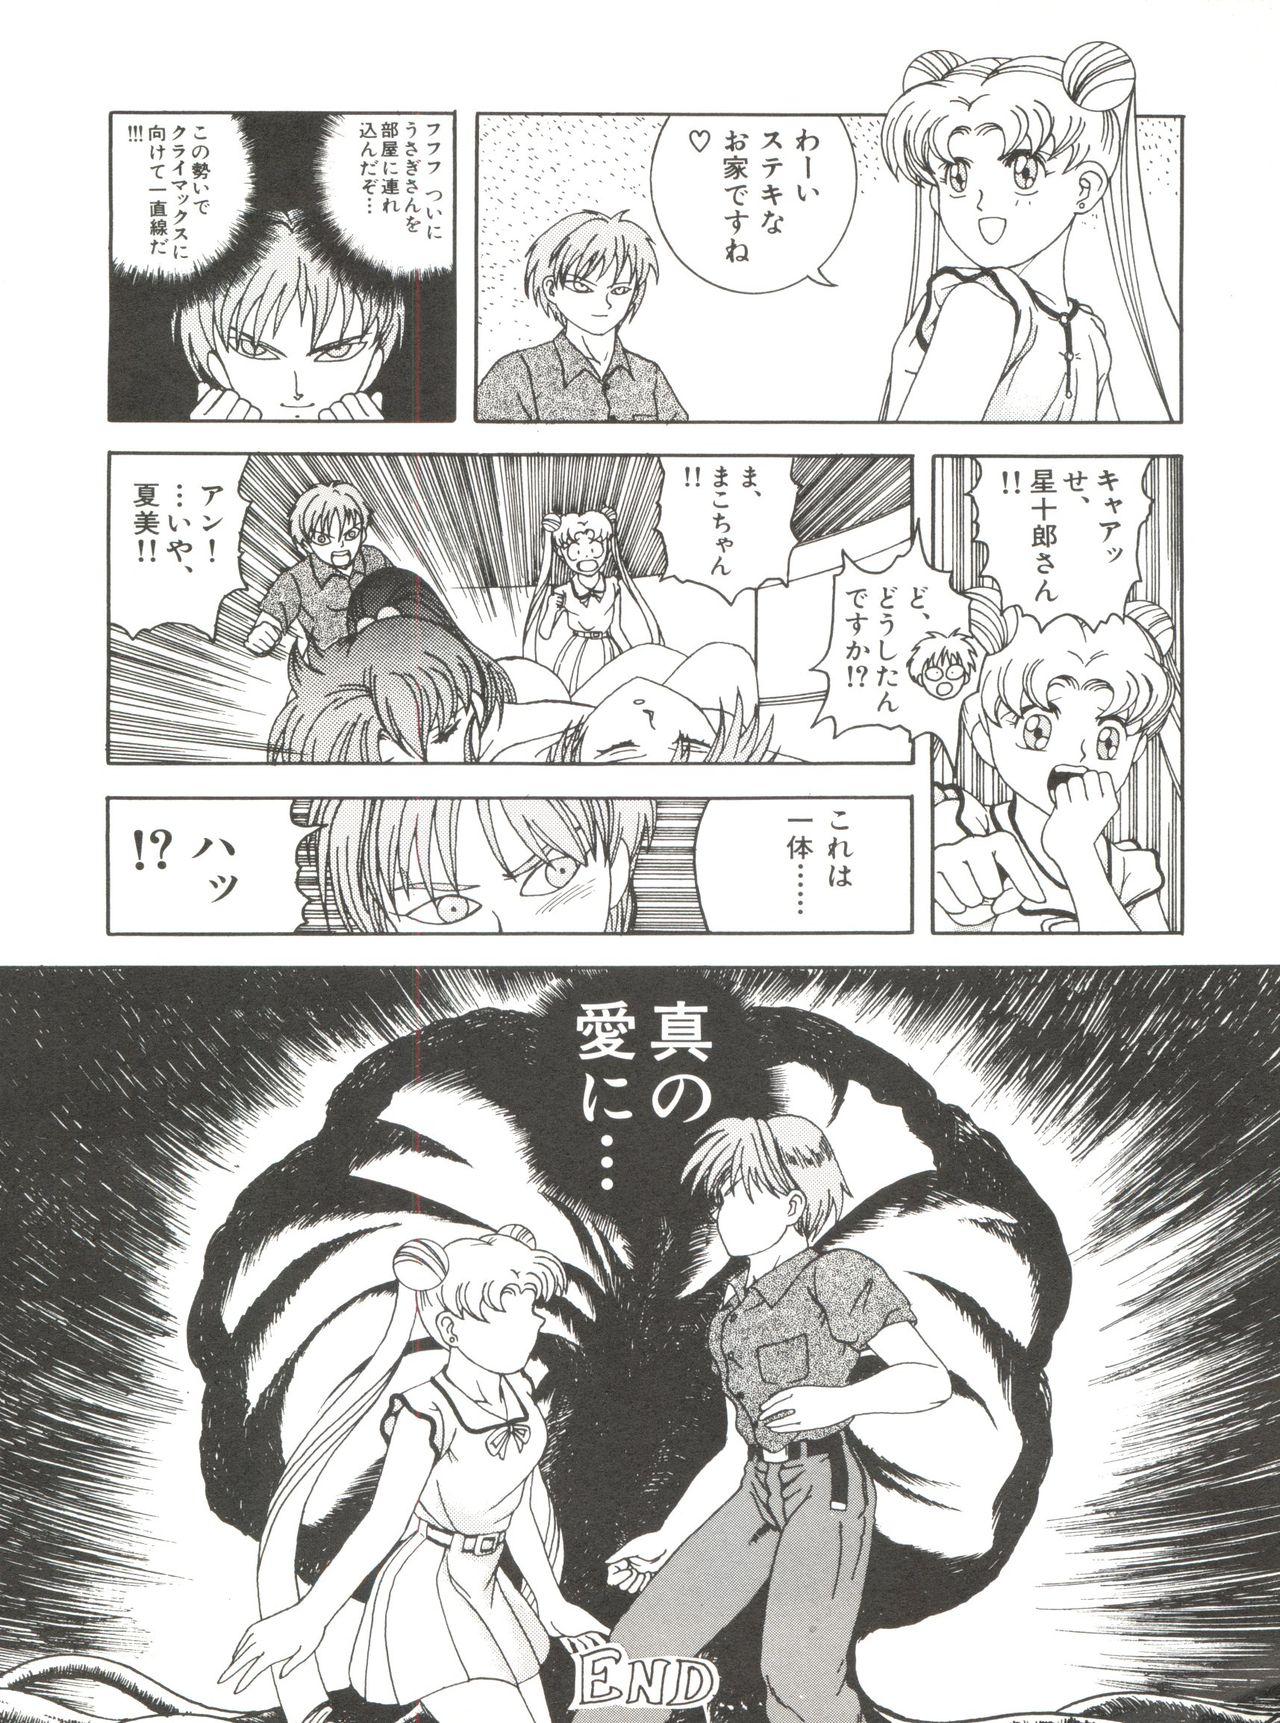 Bishoujo Doujinshi Anthology 12 - Moon Paradise 7 Tsuki no Rakuen 50